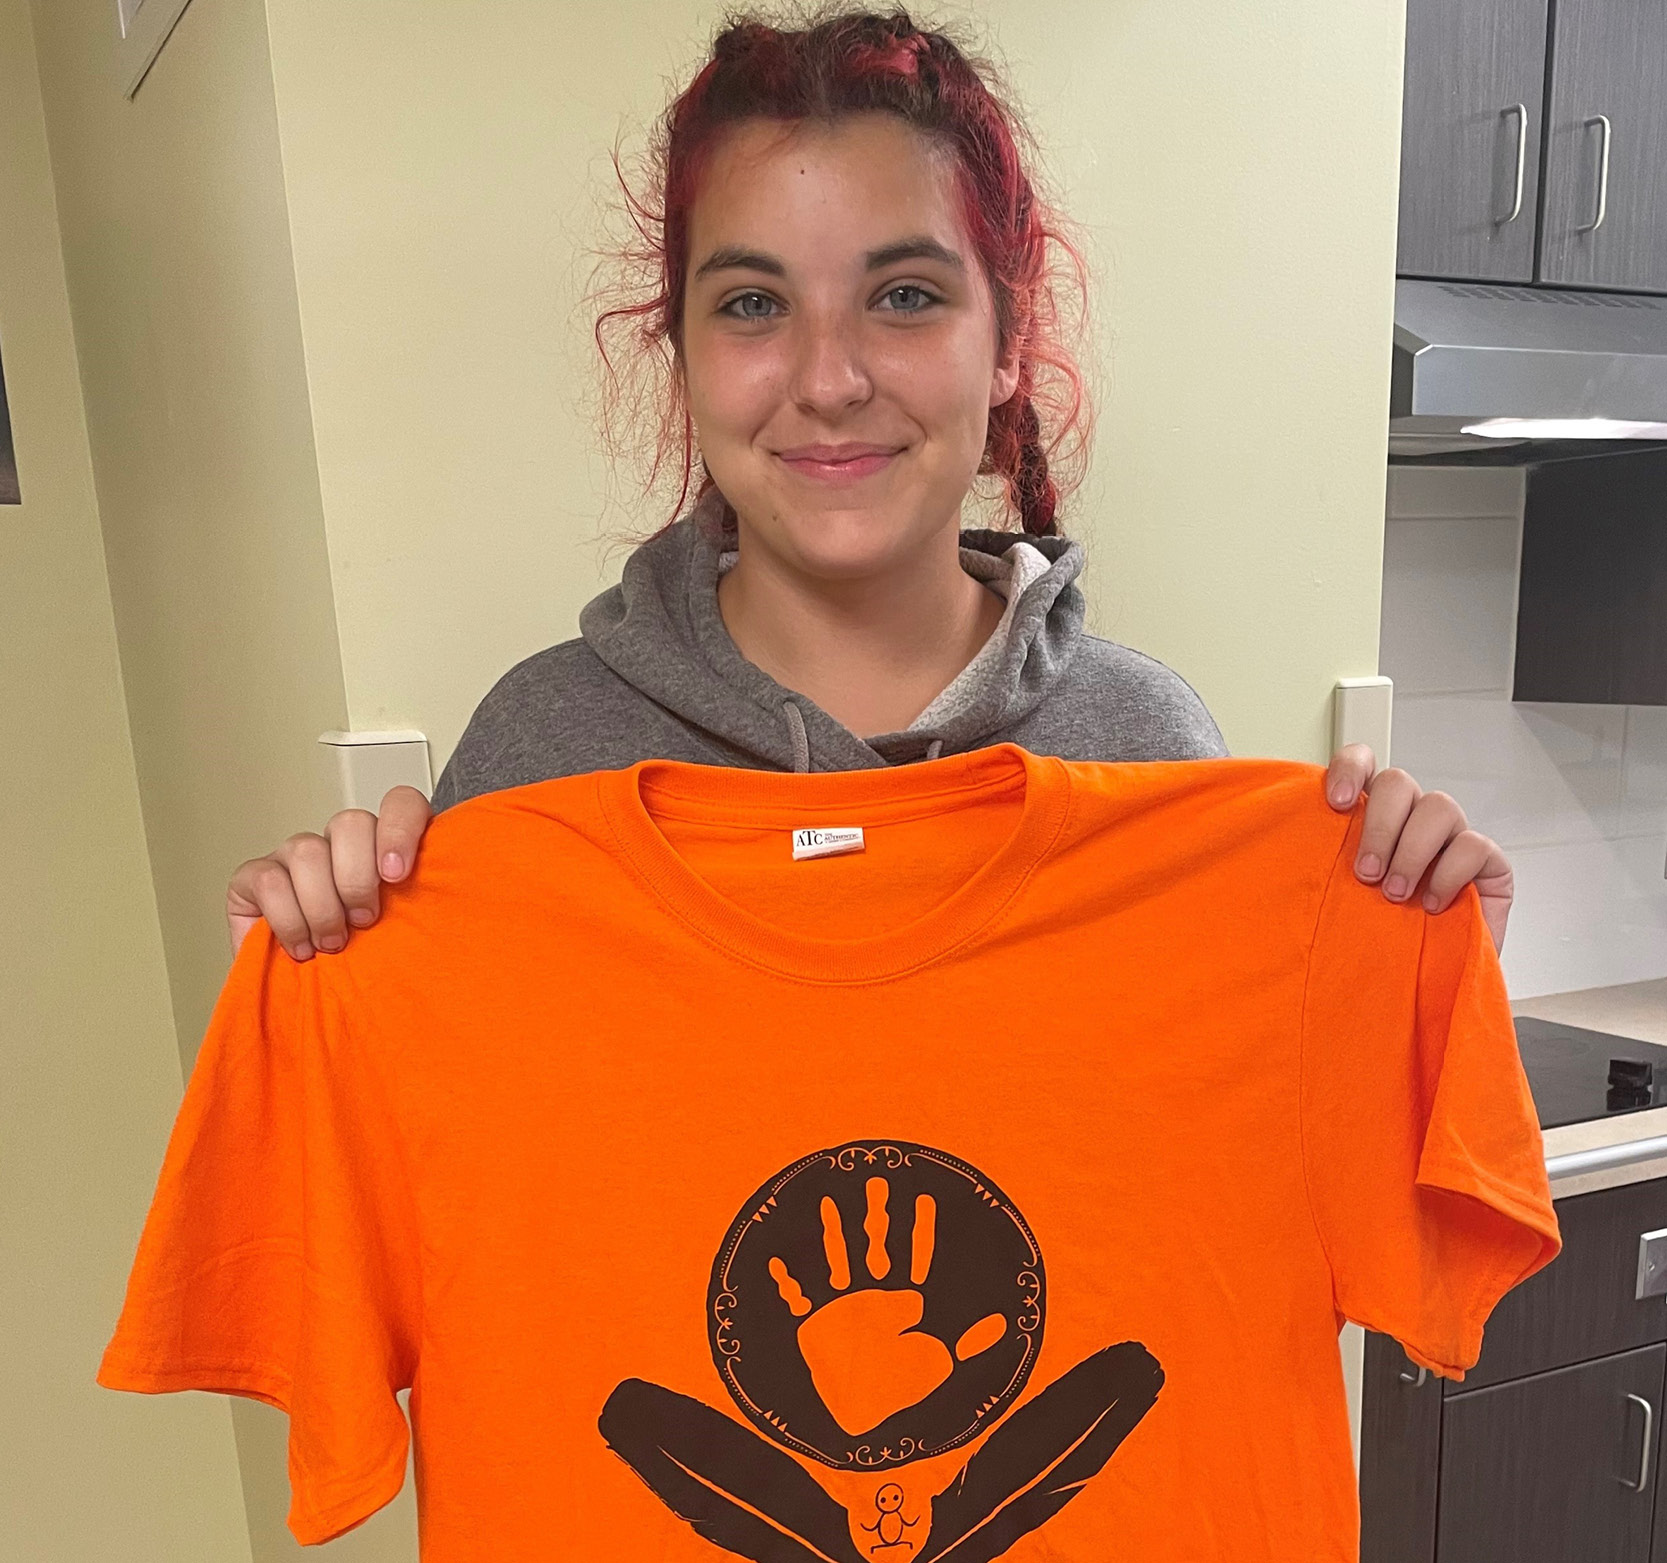 Student holding Orange Shirt